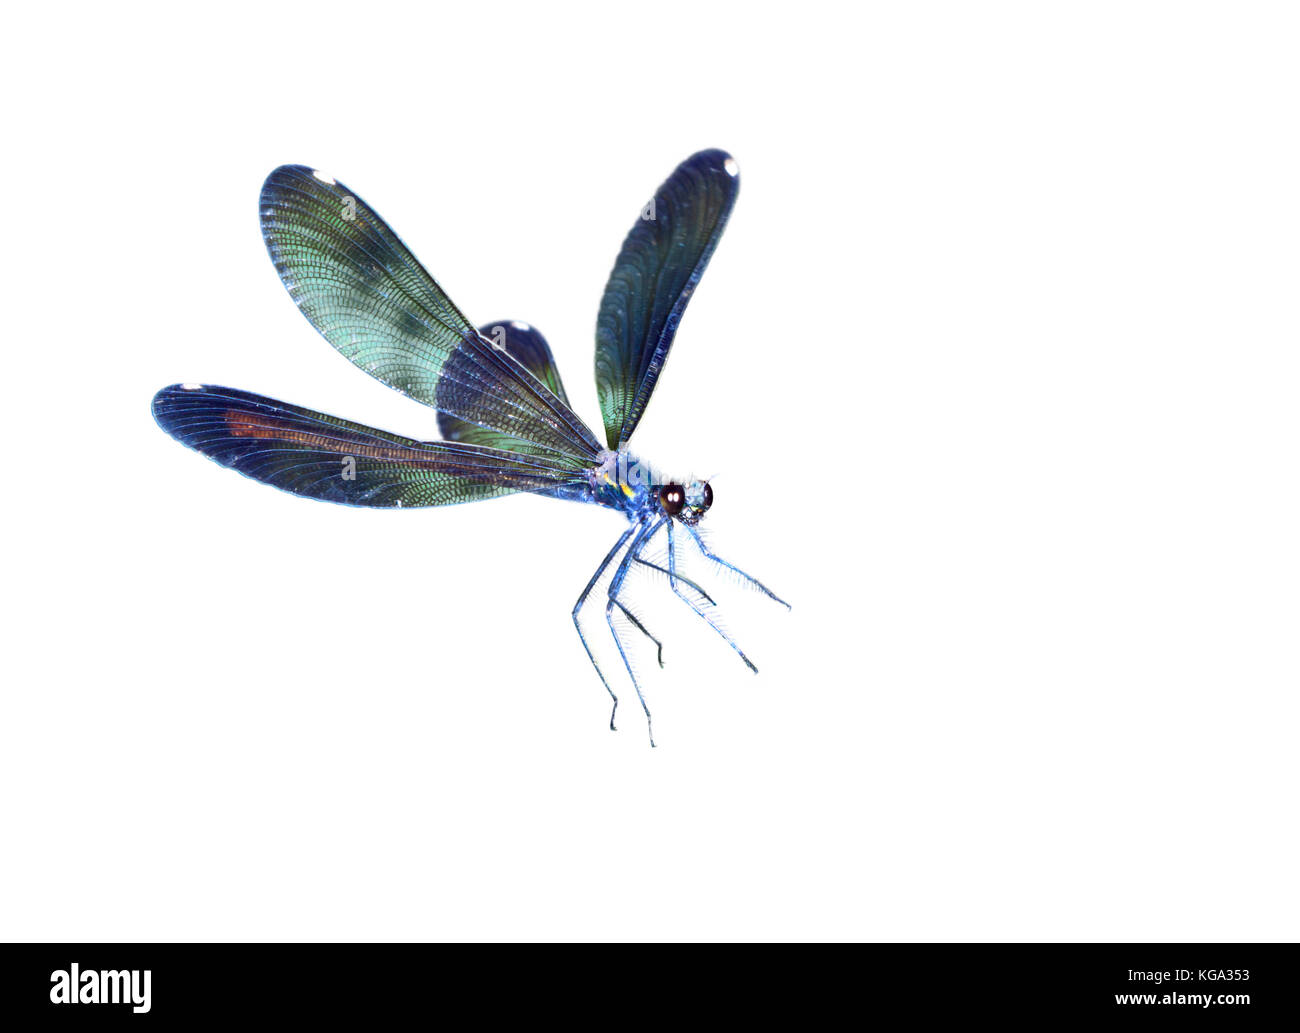 Joaillier ébène (Calopteryx maculata) volant, isolé sur fond blanc. Banque D'Images